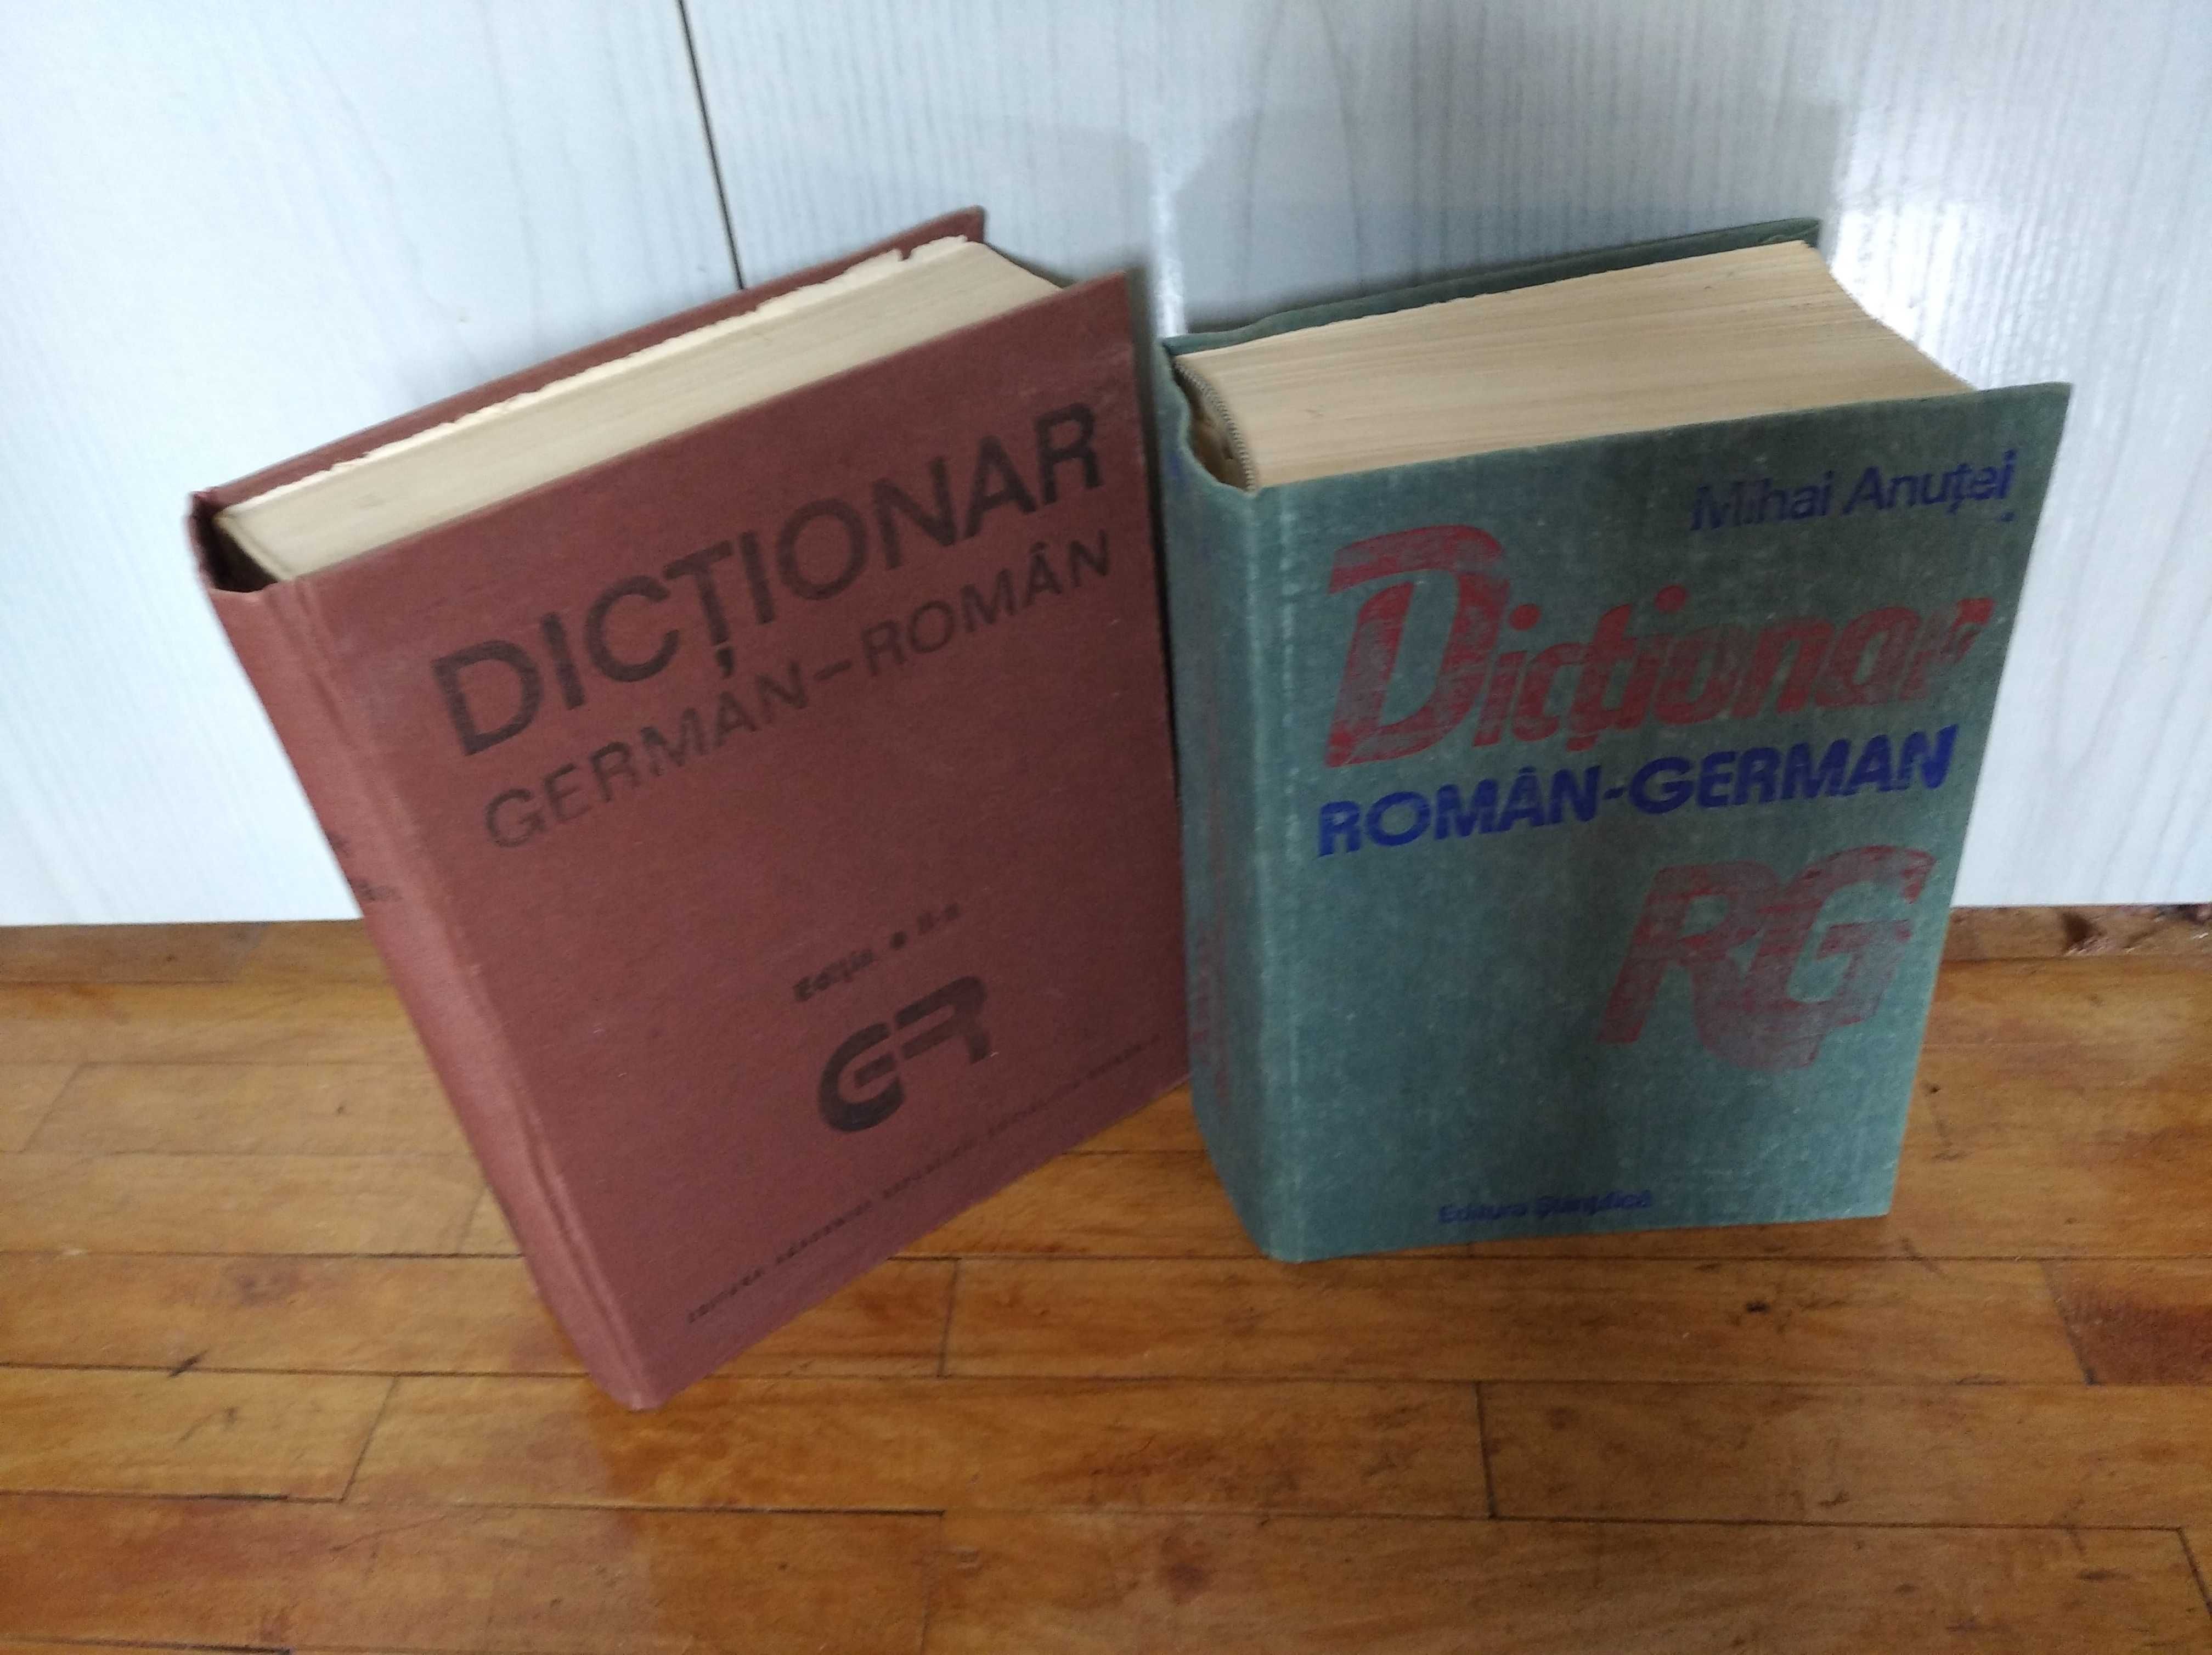 Dicționare: German -Român și Român -German